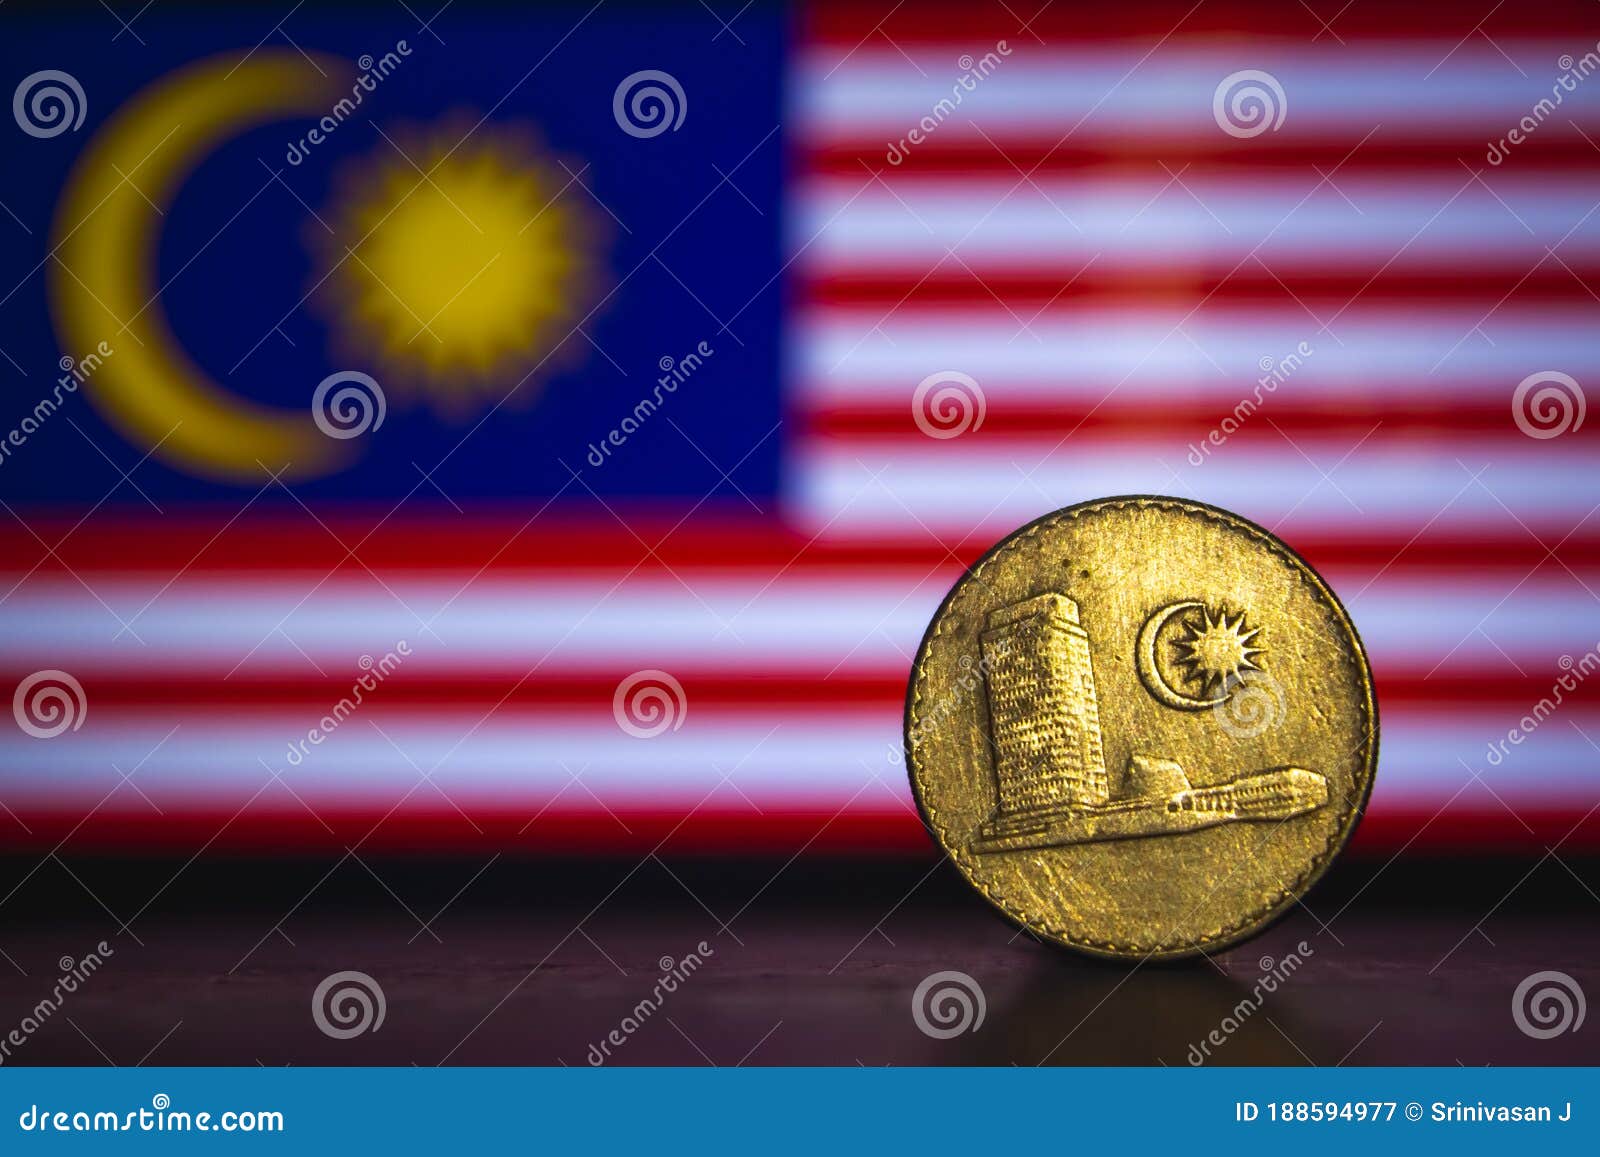 马来西亚50分铜镍币1988年马来西亚硬币-价格:3元-se80663930-外国钱币-零售-7788收藏__收藏热线